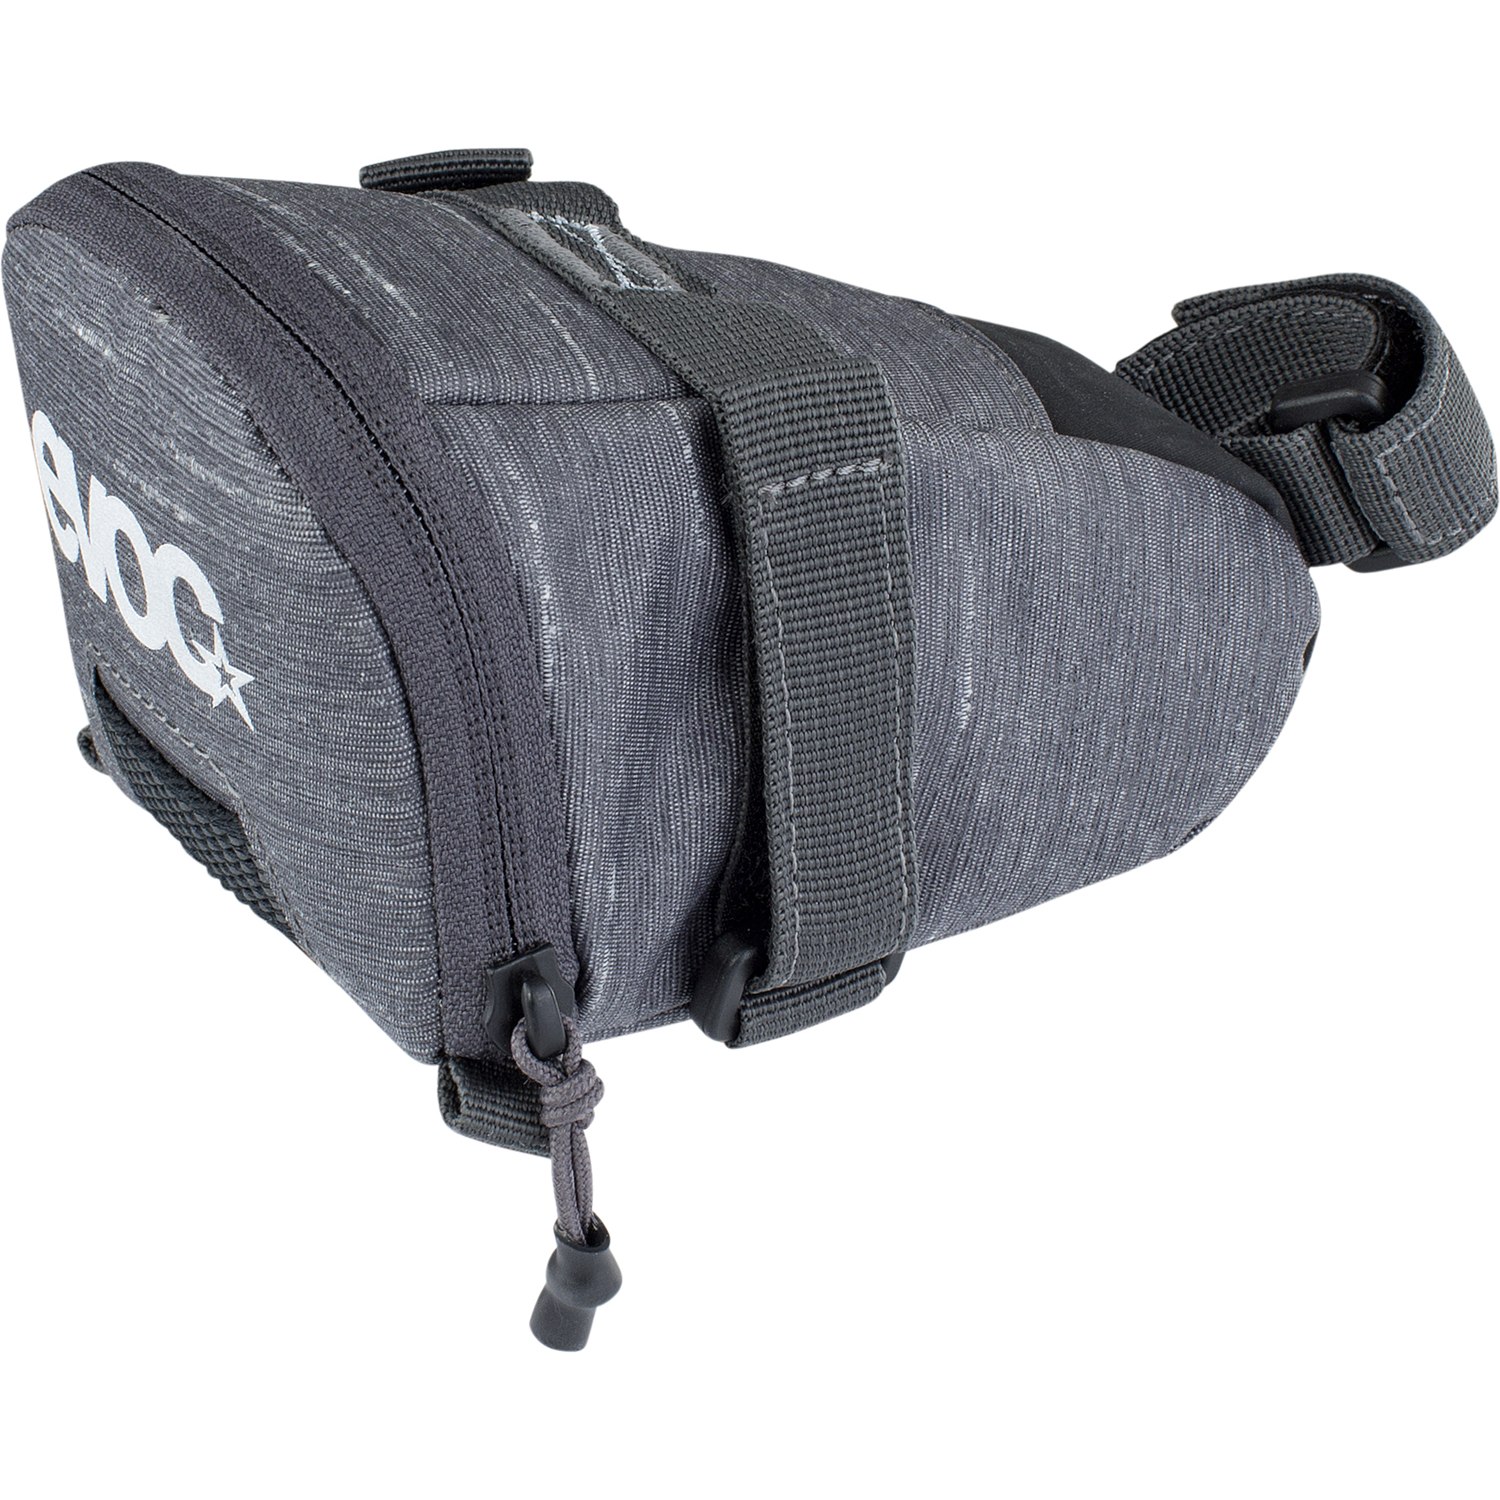 Bild von EVOC Seat Bag Tour - 0.7L Satteltasche - Carbon Grey